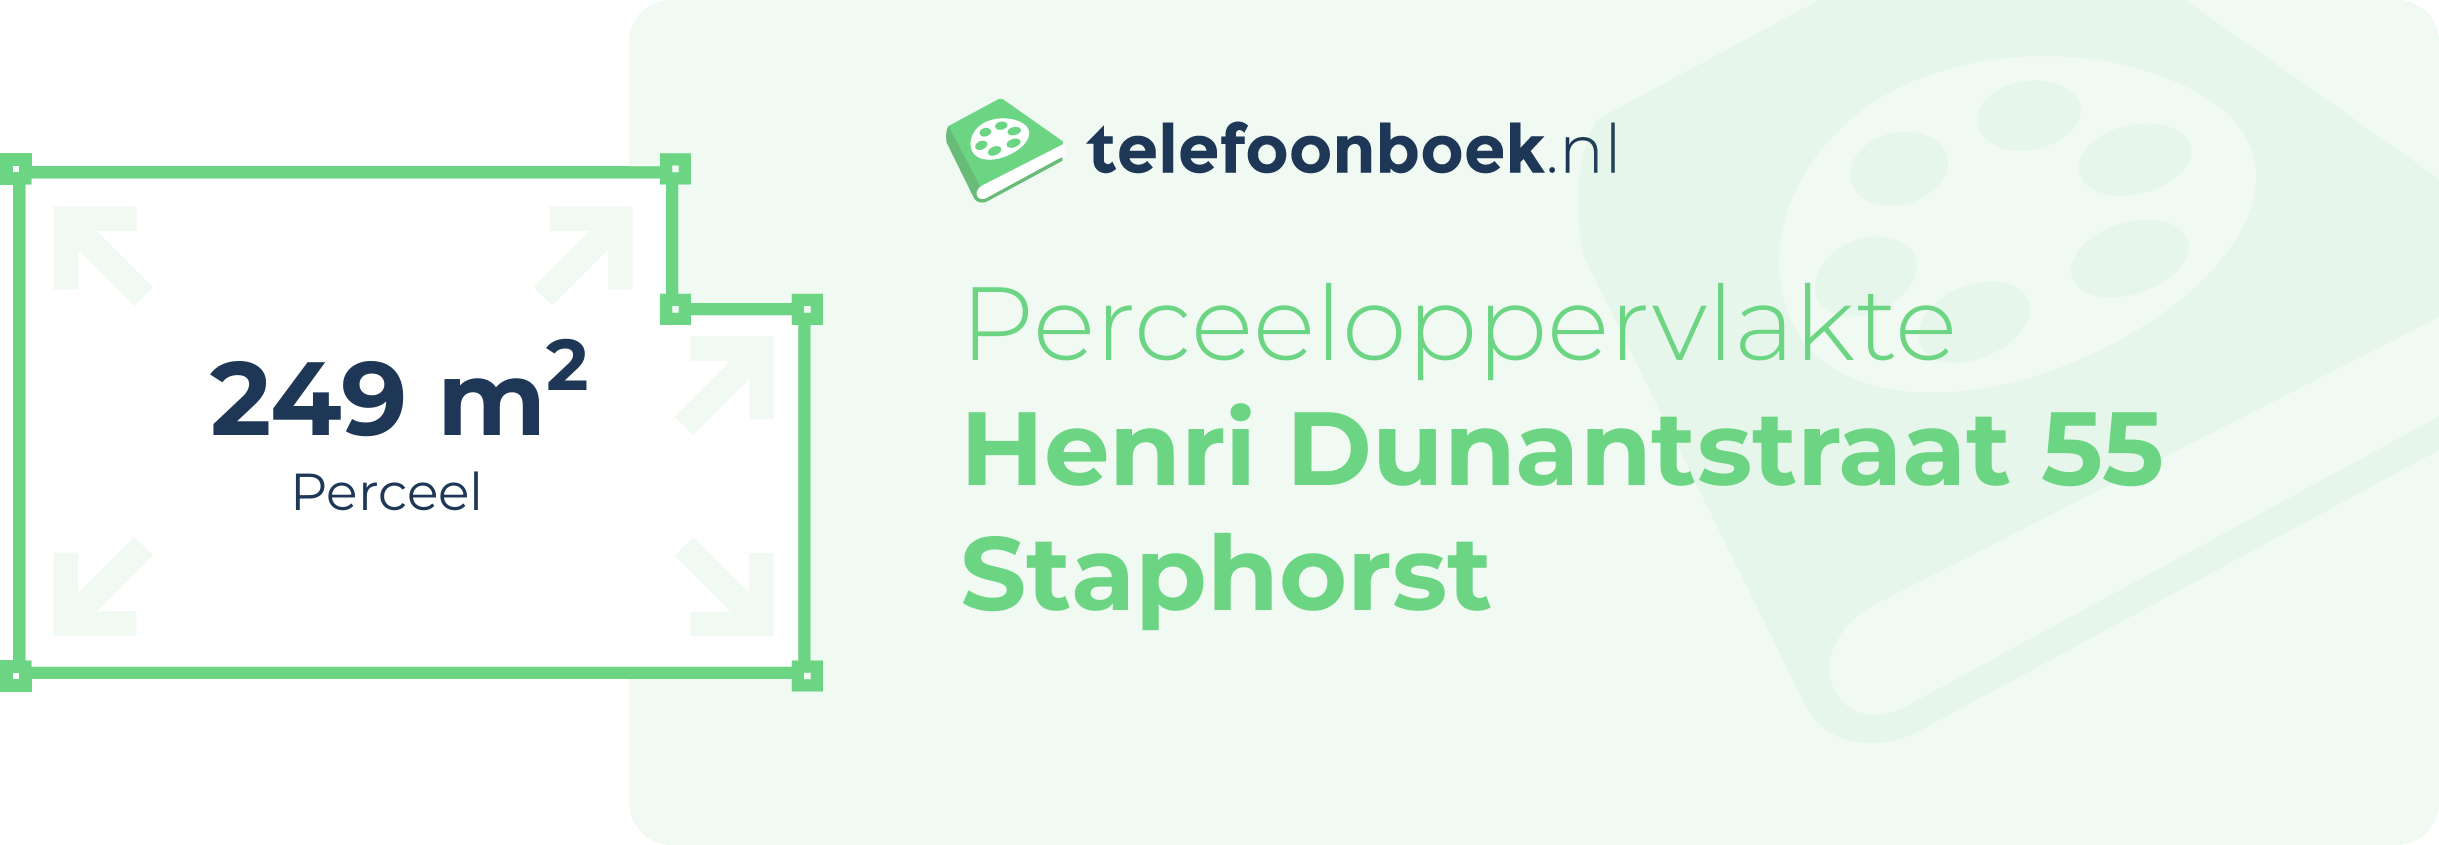 Perceeloppervlakte Henri Dunantstraat 55 Staphorst